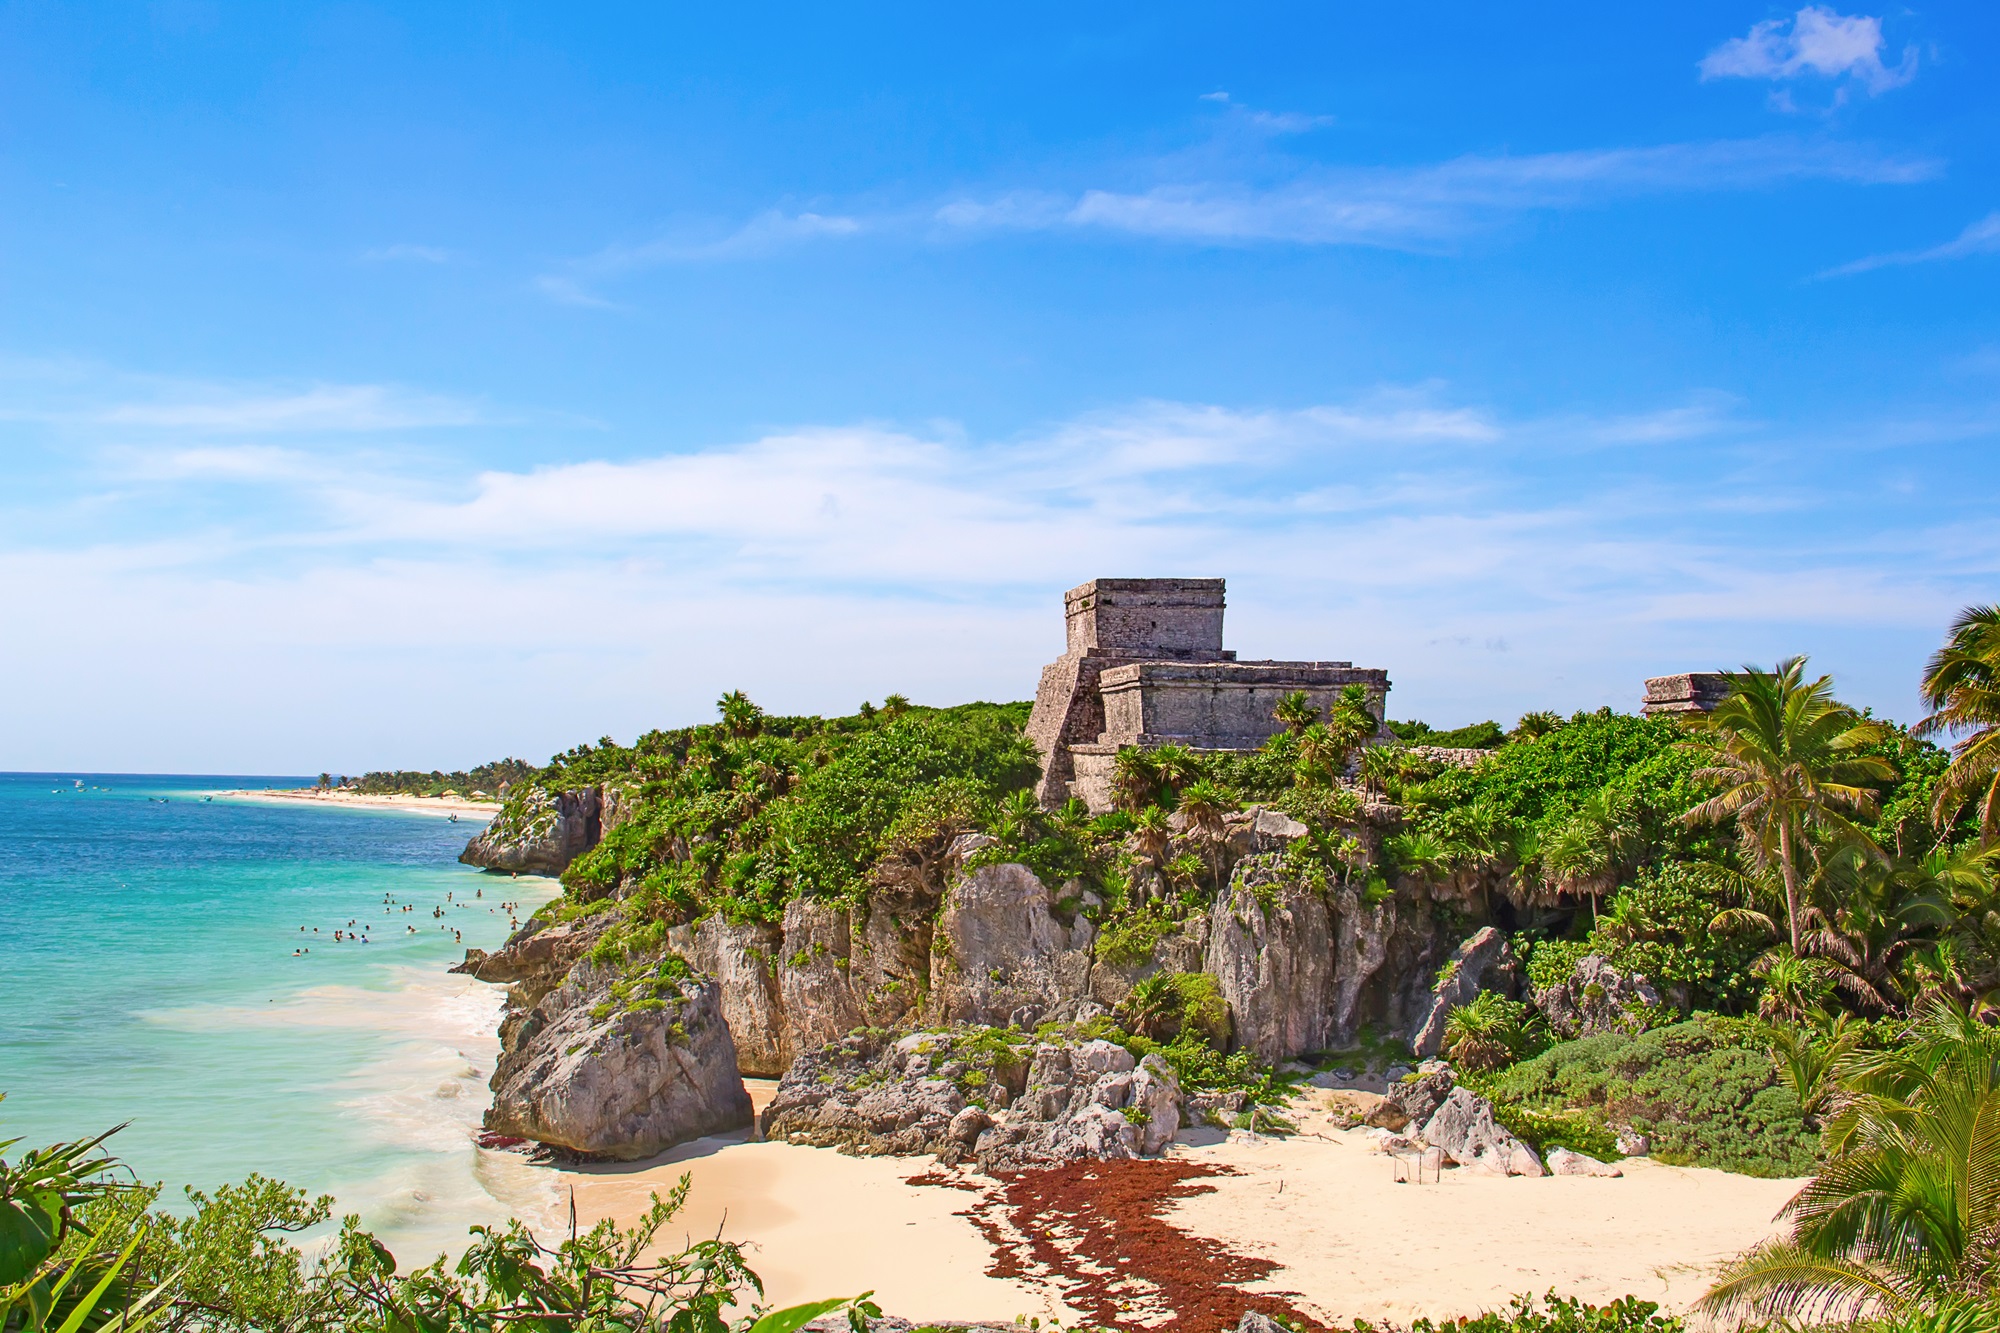 Partir au Mexique pour les plages paradisiaques de Tulum. ©swisshippo, Adobe